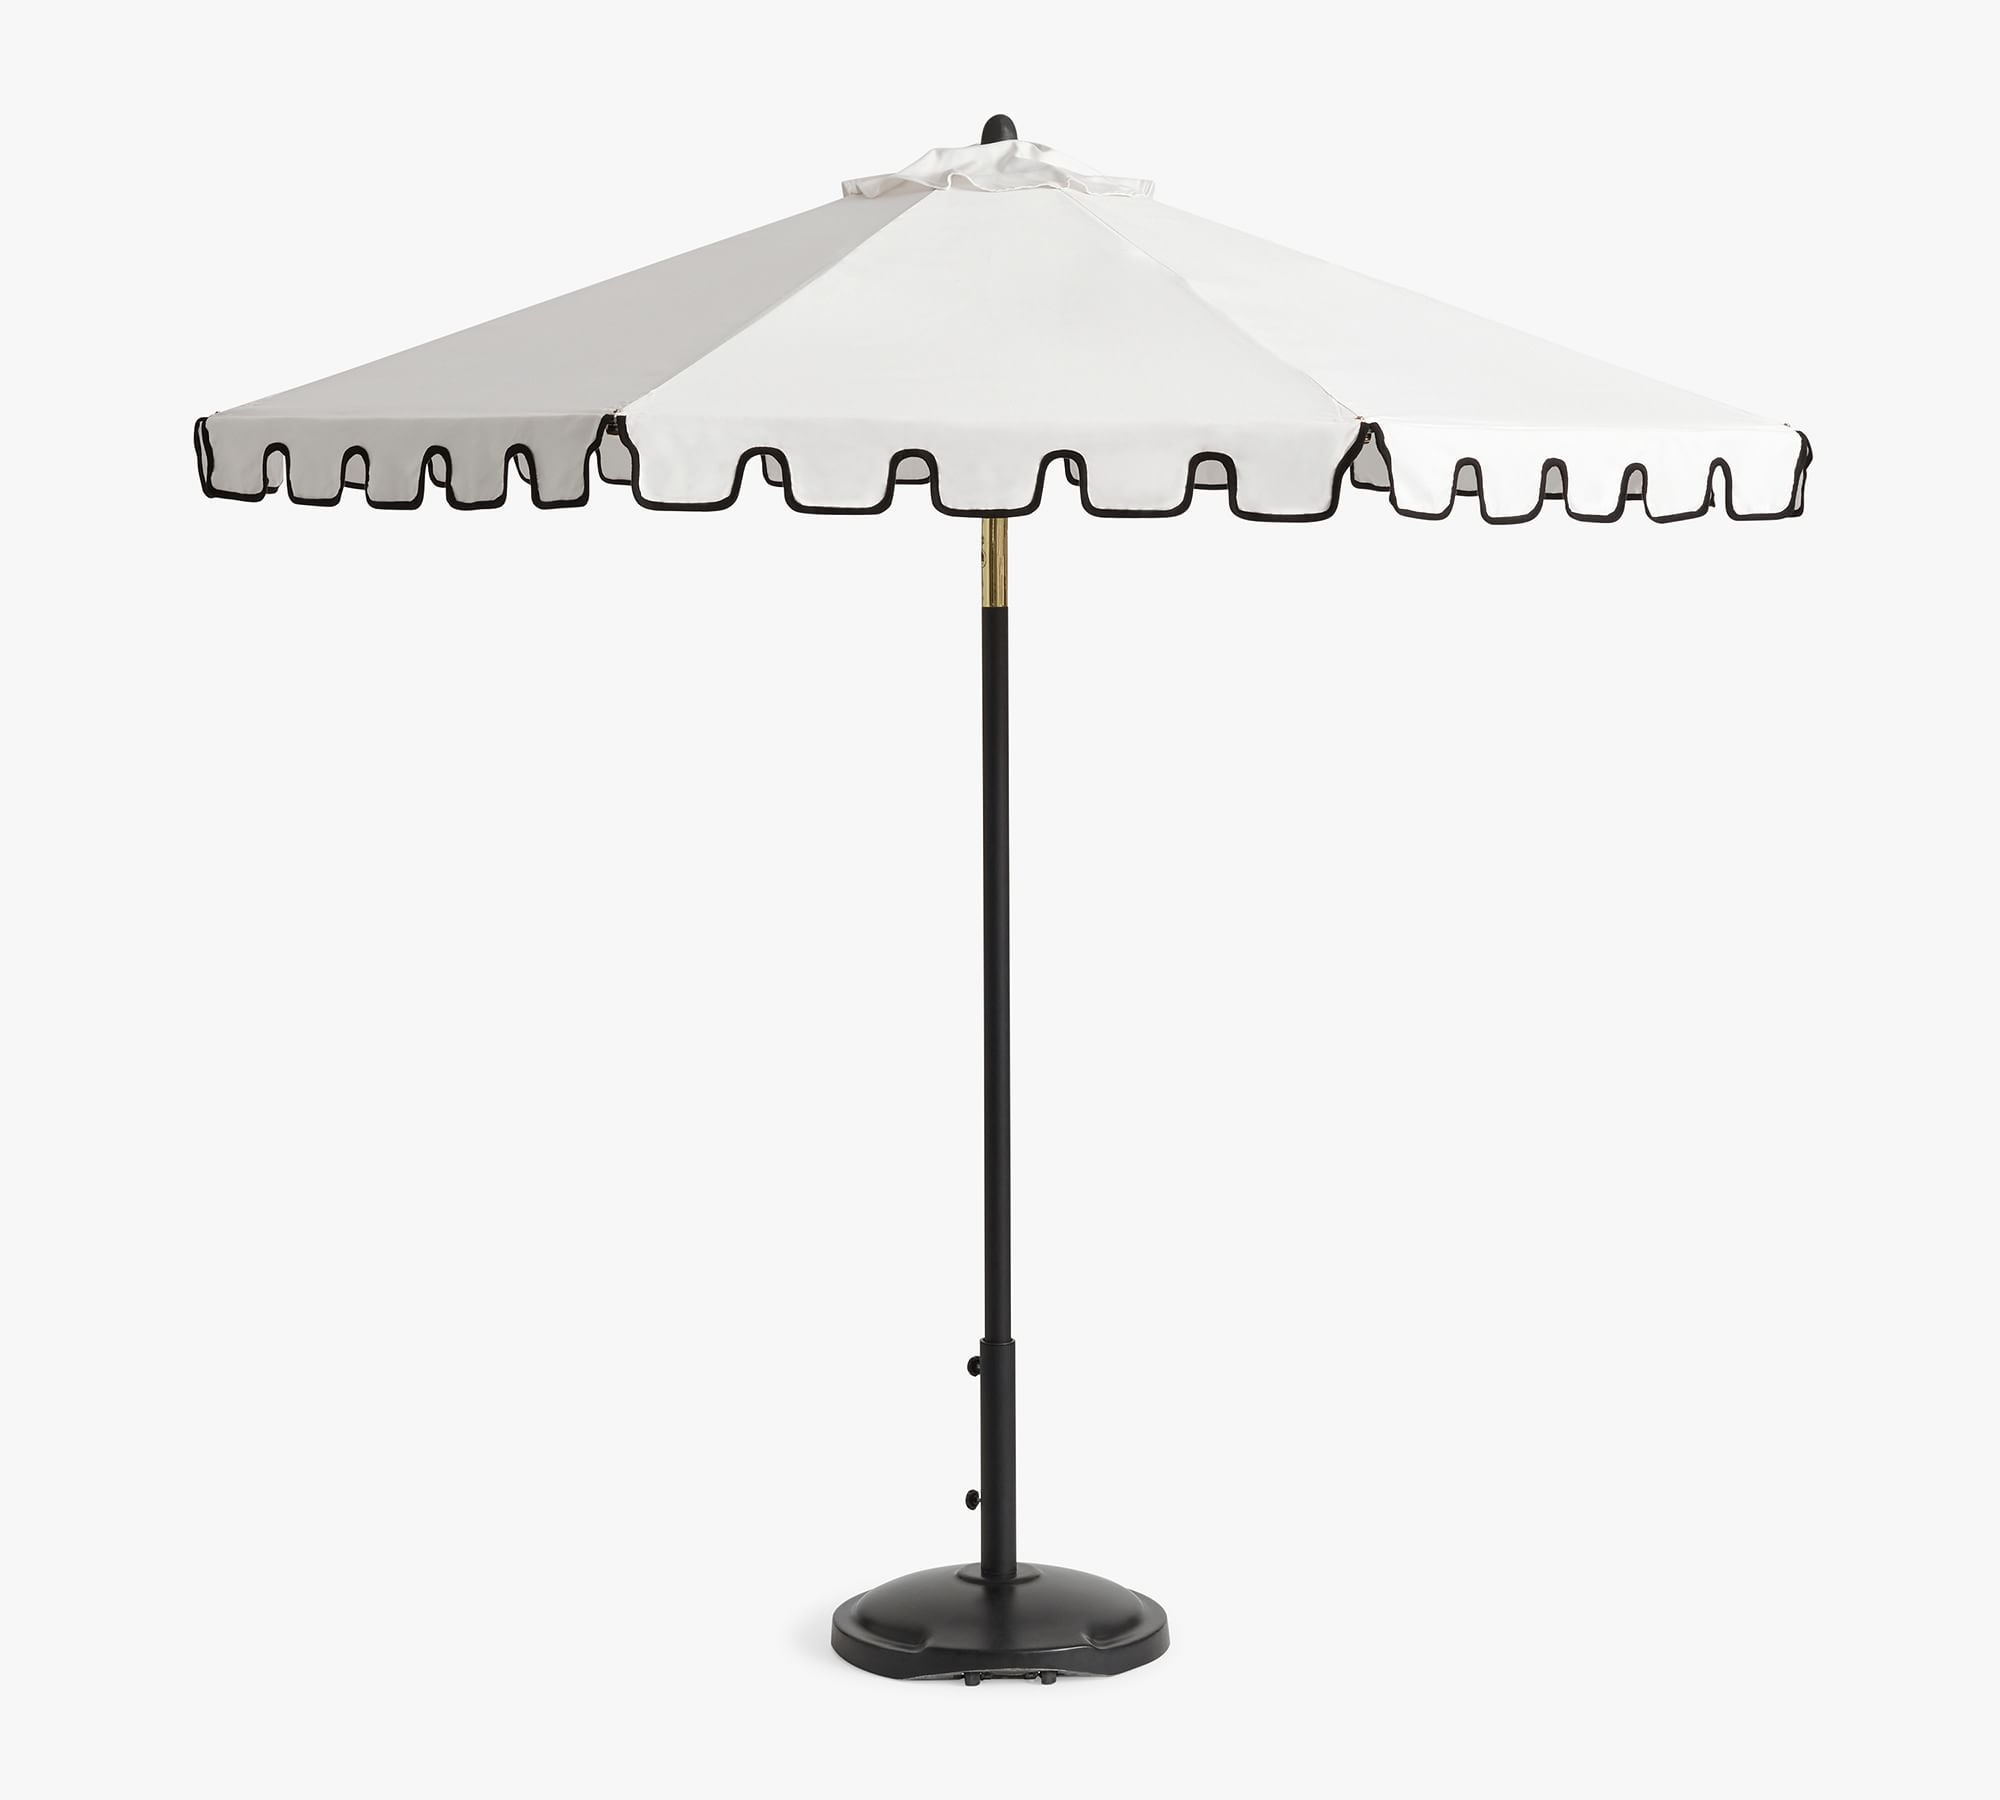 Premium Portofino 9' Round Umbrella- Aluminum Black-Sunbrella(R) Natural- Black Trim - Image 0